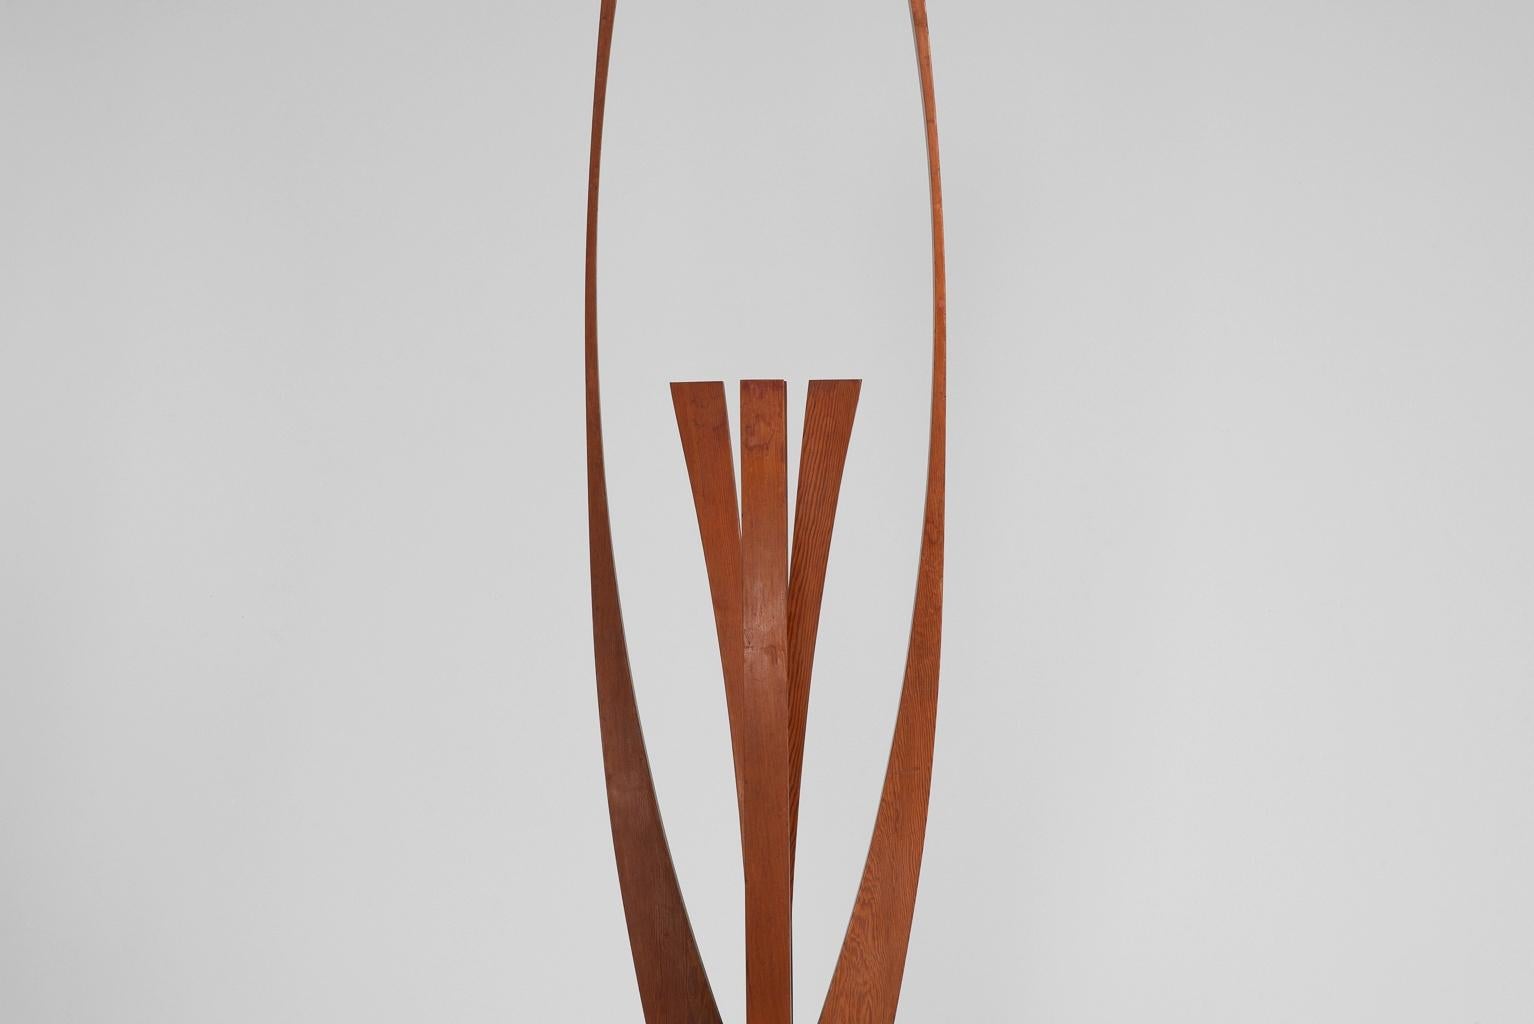 Cette sculpture monumentale de Frans Hermes est une véritable œuvre d'art moderne des années 1970. Il est fabriqué en bois de pin massif très patiné, ce qui lui confère un aspect unique et altéré. La sculpture repose sur une base qui a été refinie